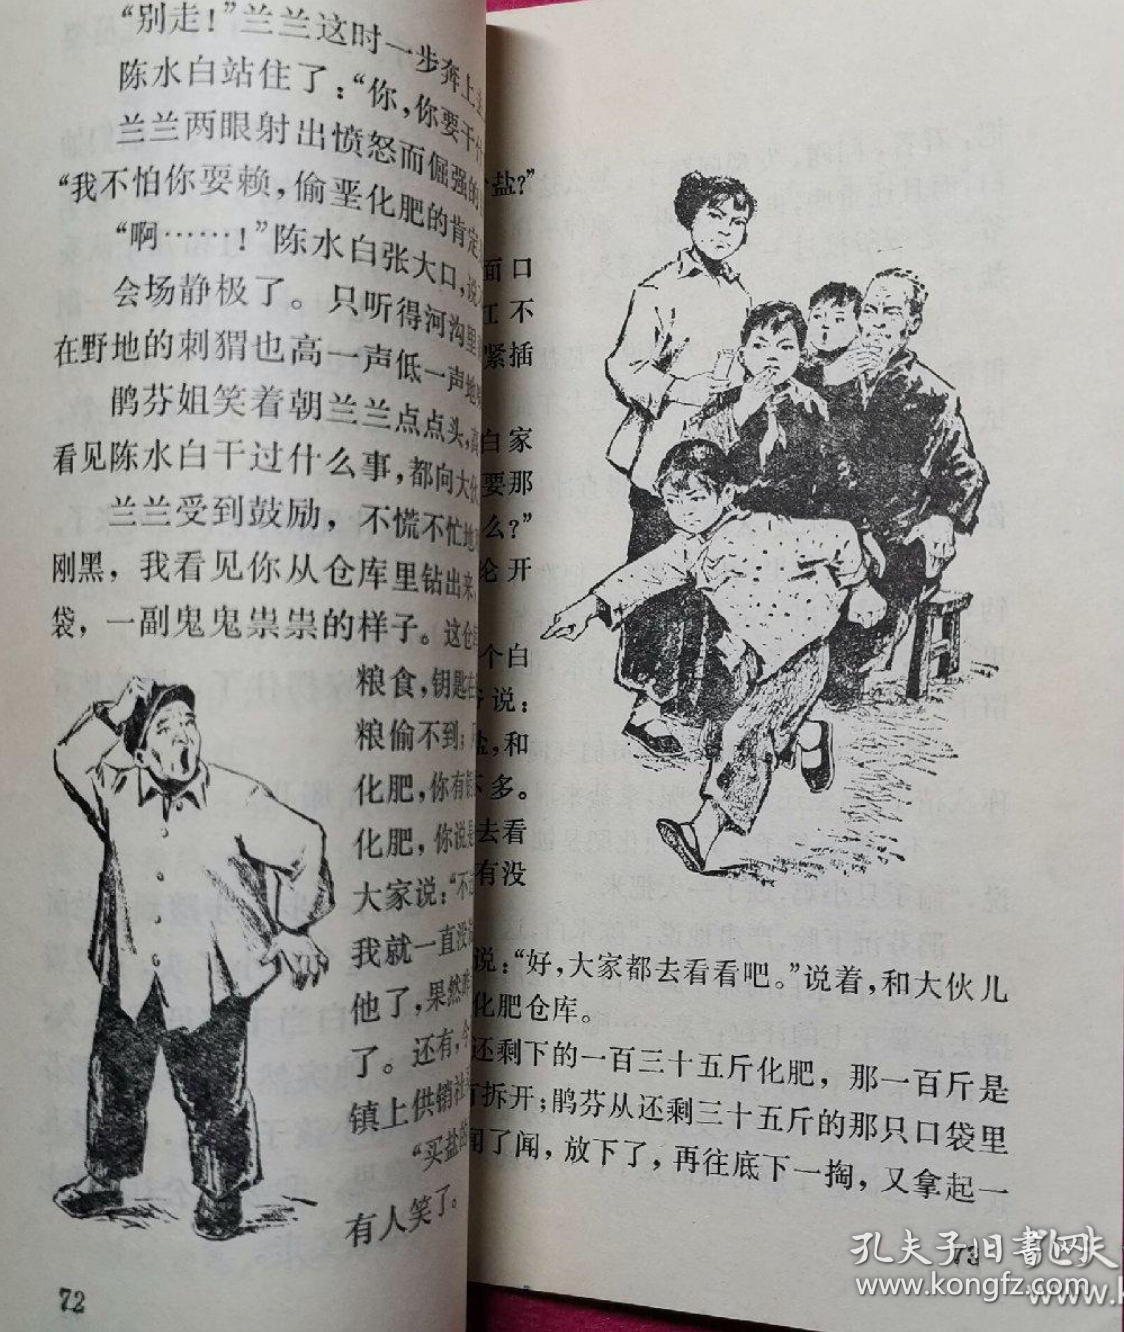 【70年代短篇小说集】《半个队长 》农村小孩是如何在农业学大寨时期做事的...有精美插图